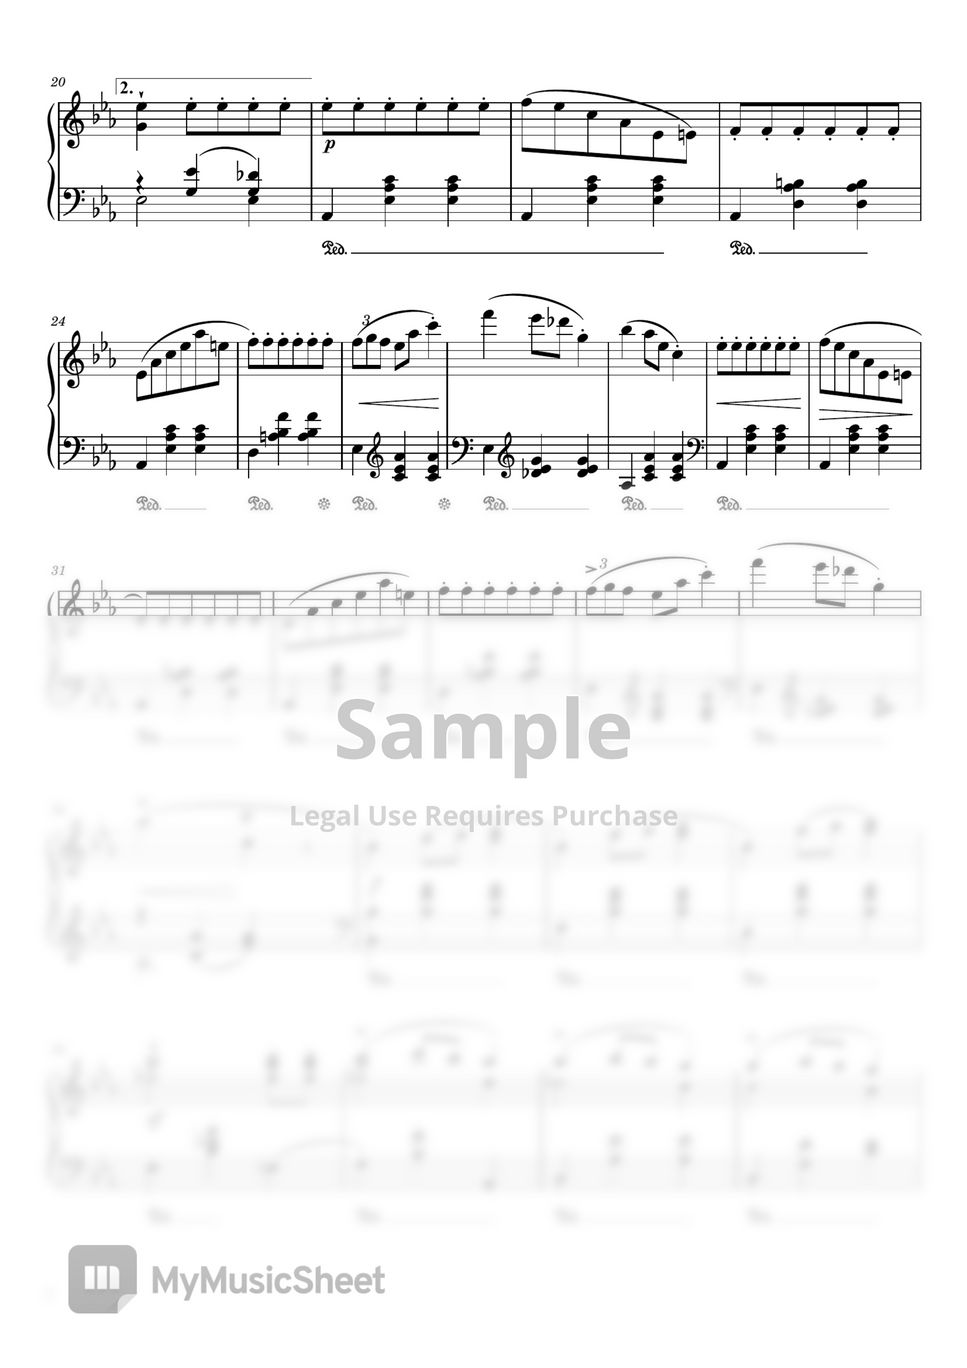 Fryderyk Franciszek Chopin - Waltz in E♭ Major Op.18 (Chopin Waltz in E♭ Major - Opus 18 - “Grande Valse brillante” - For Piano Solo) by poon